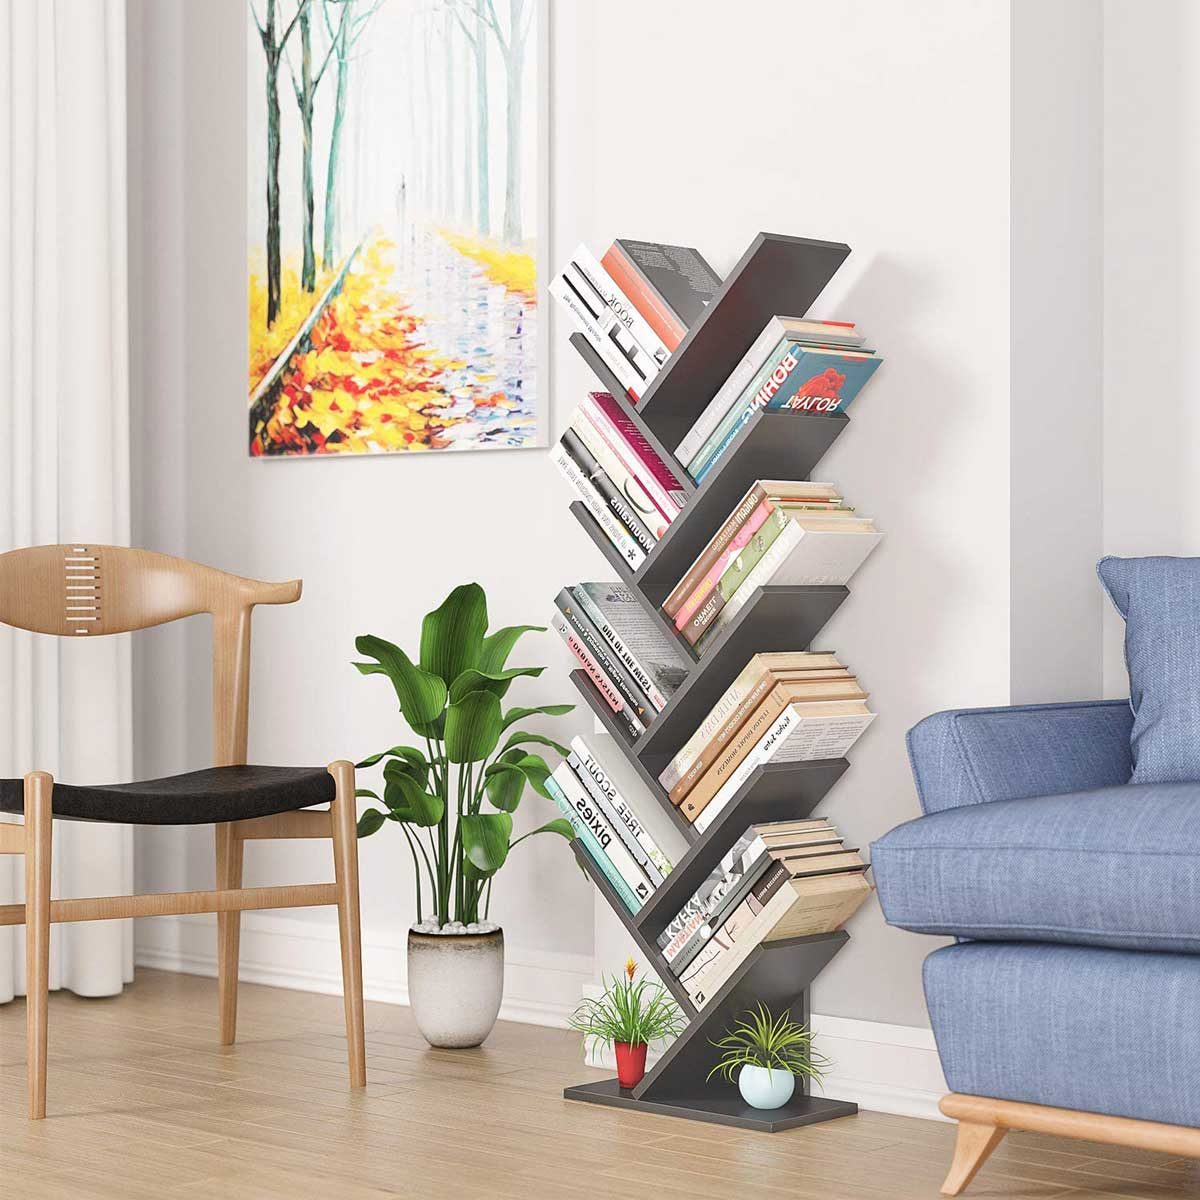 Beyond Books: Innovative Ideas For Styling Bookshelves